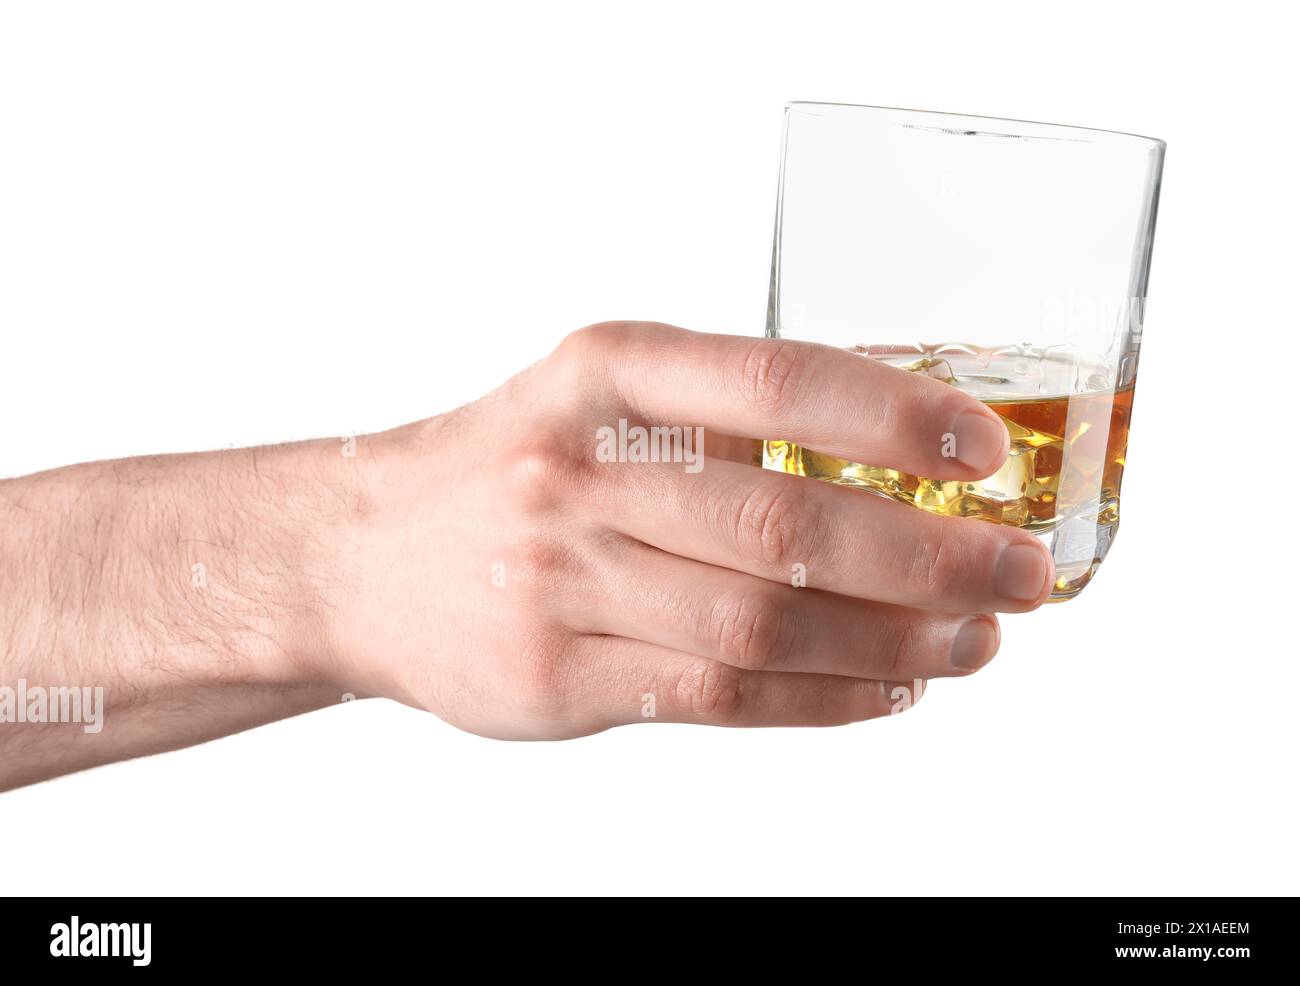 Uomo che regge un bicchiere di whisky con cubetti di ghiaccio su sfondo bianco, primo piano Foto Stock